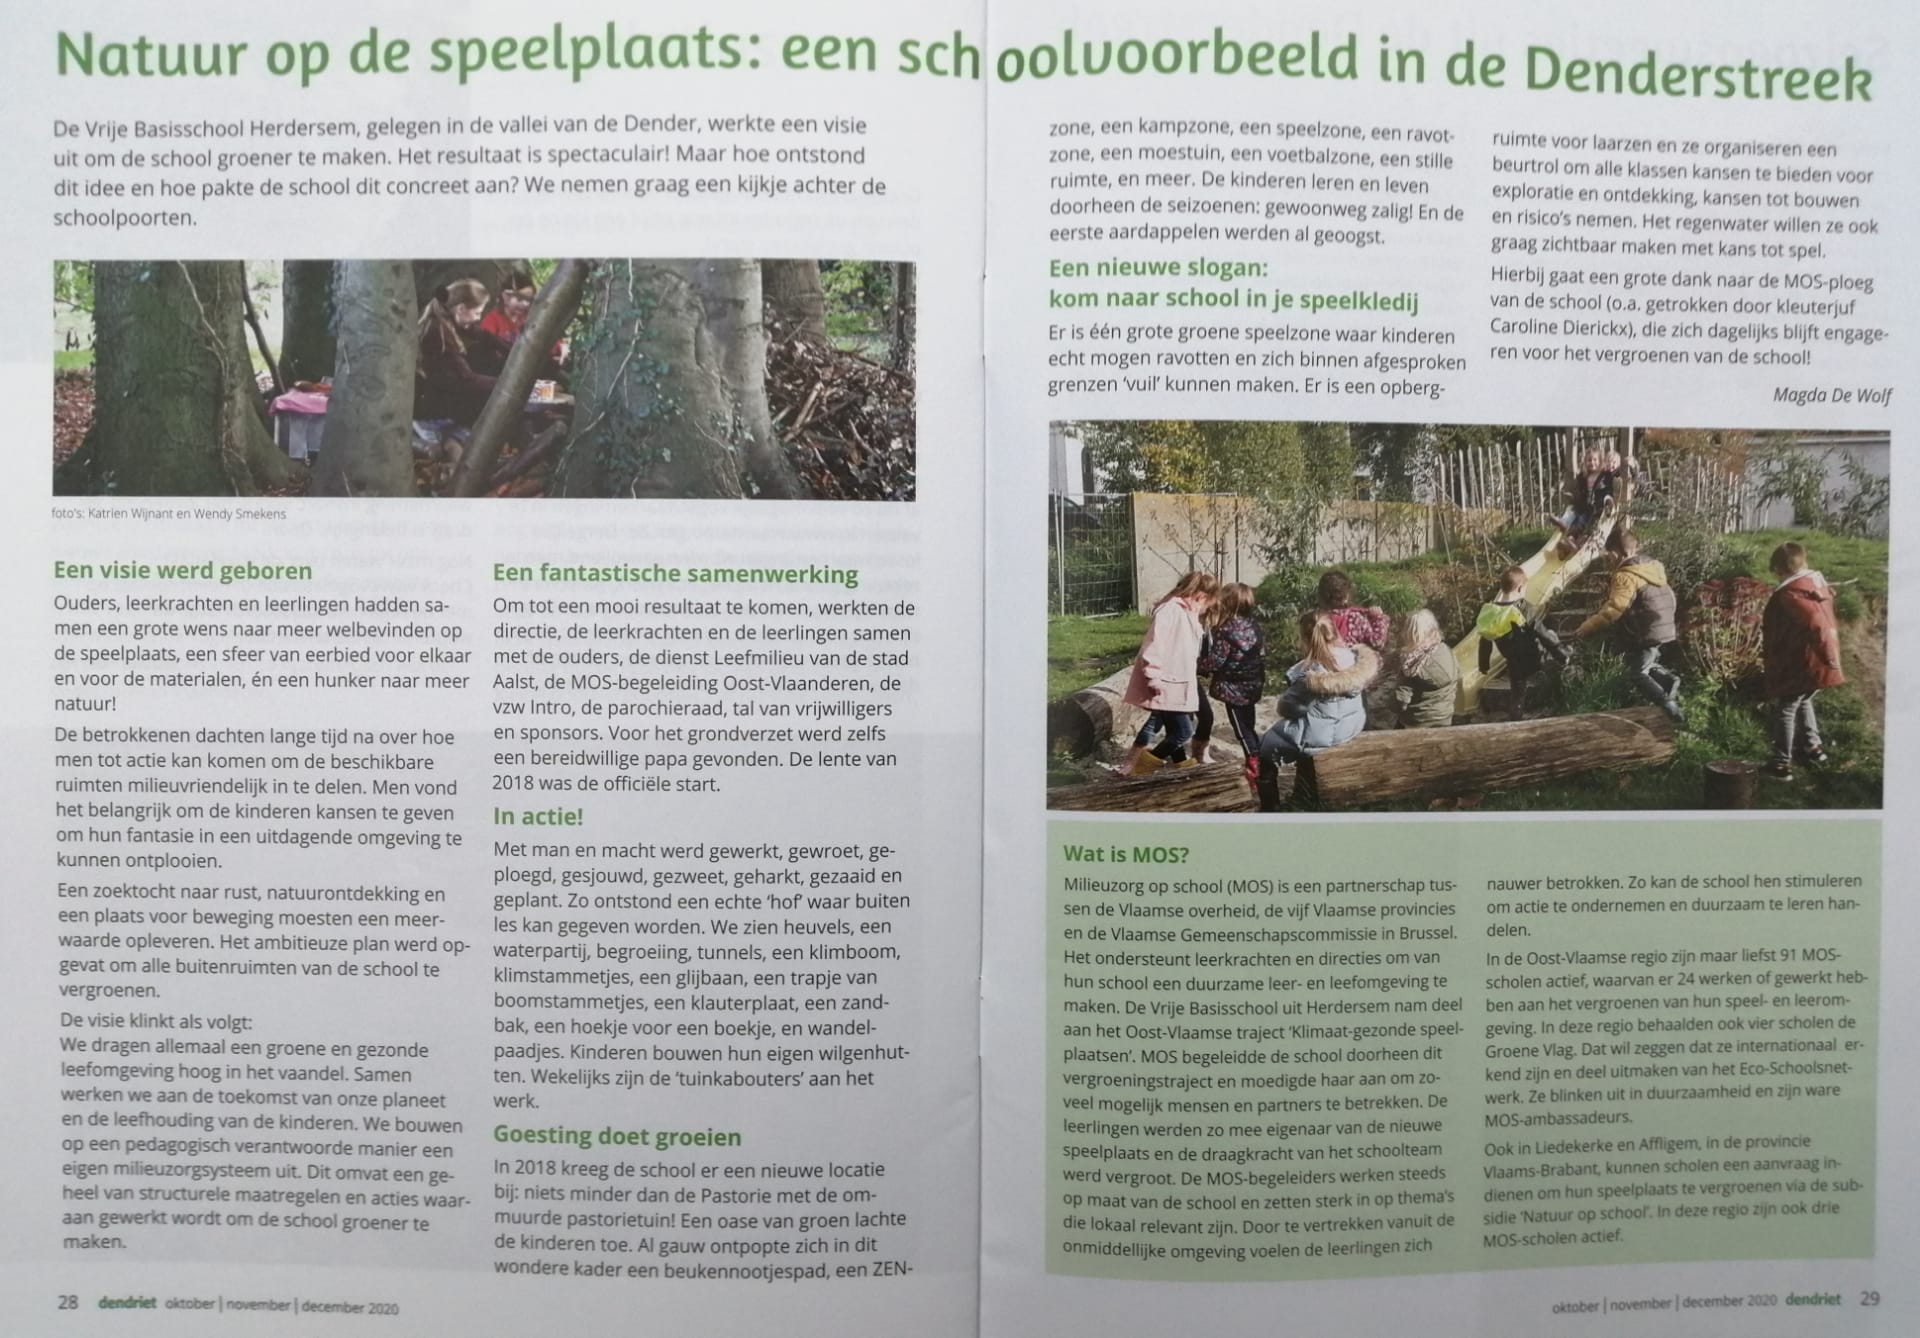 Alweer een prachtig artikel over onze groene school. Prachtig verwoord door Magda De Wolf. (Dendriet, oktober/november/december 2020)